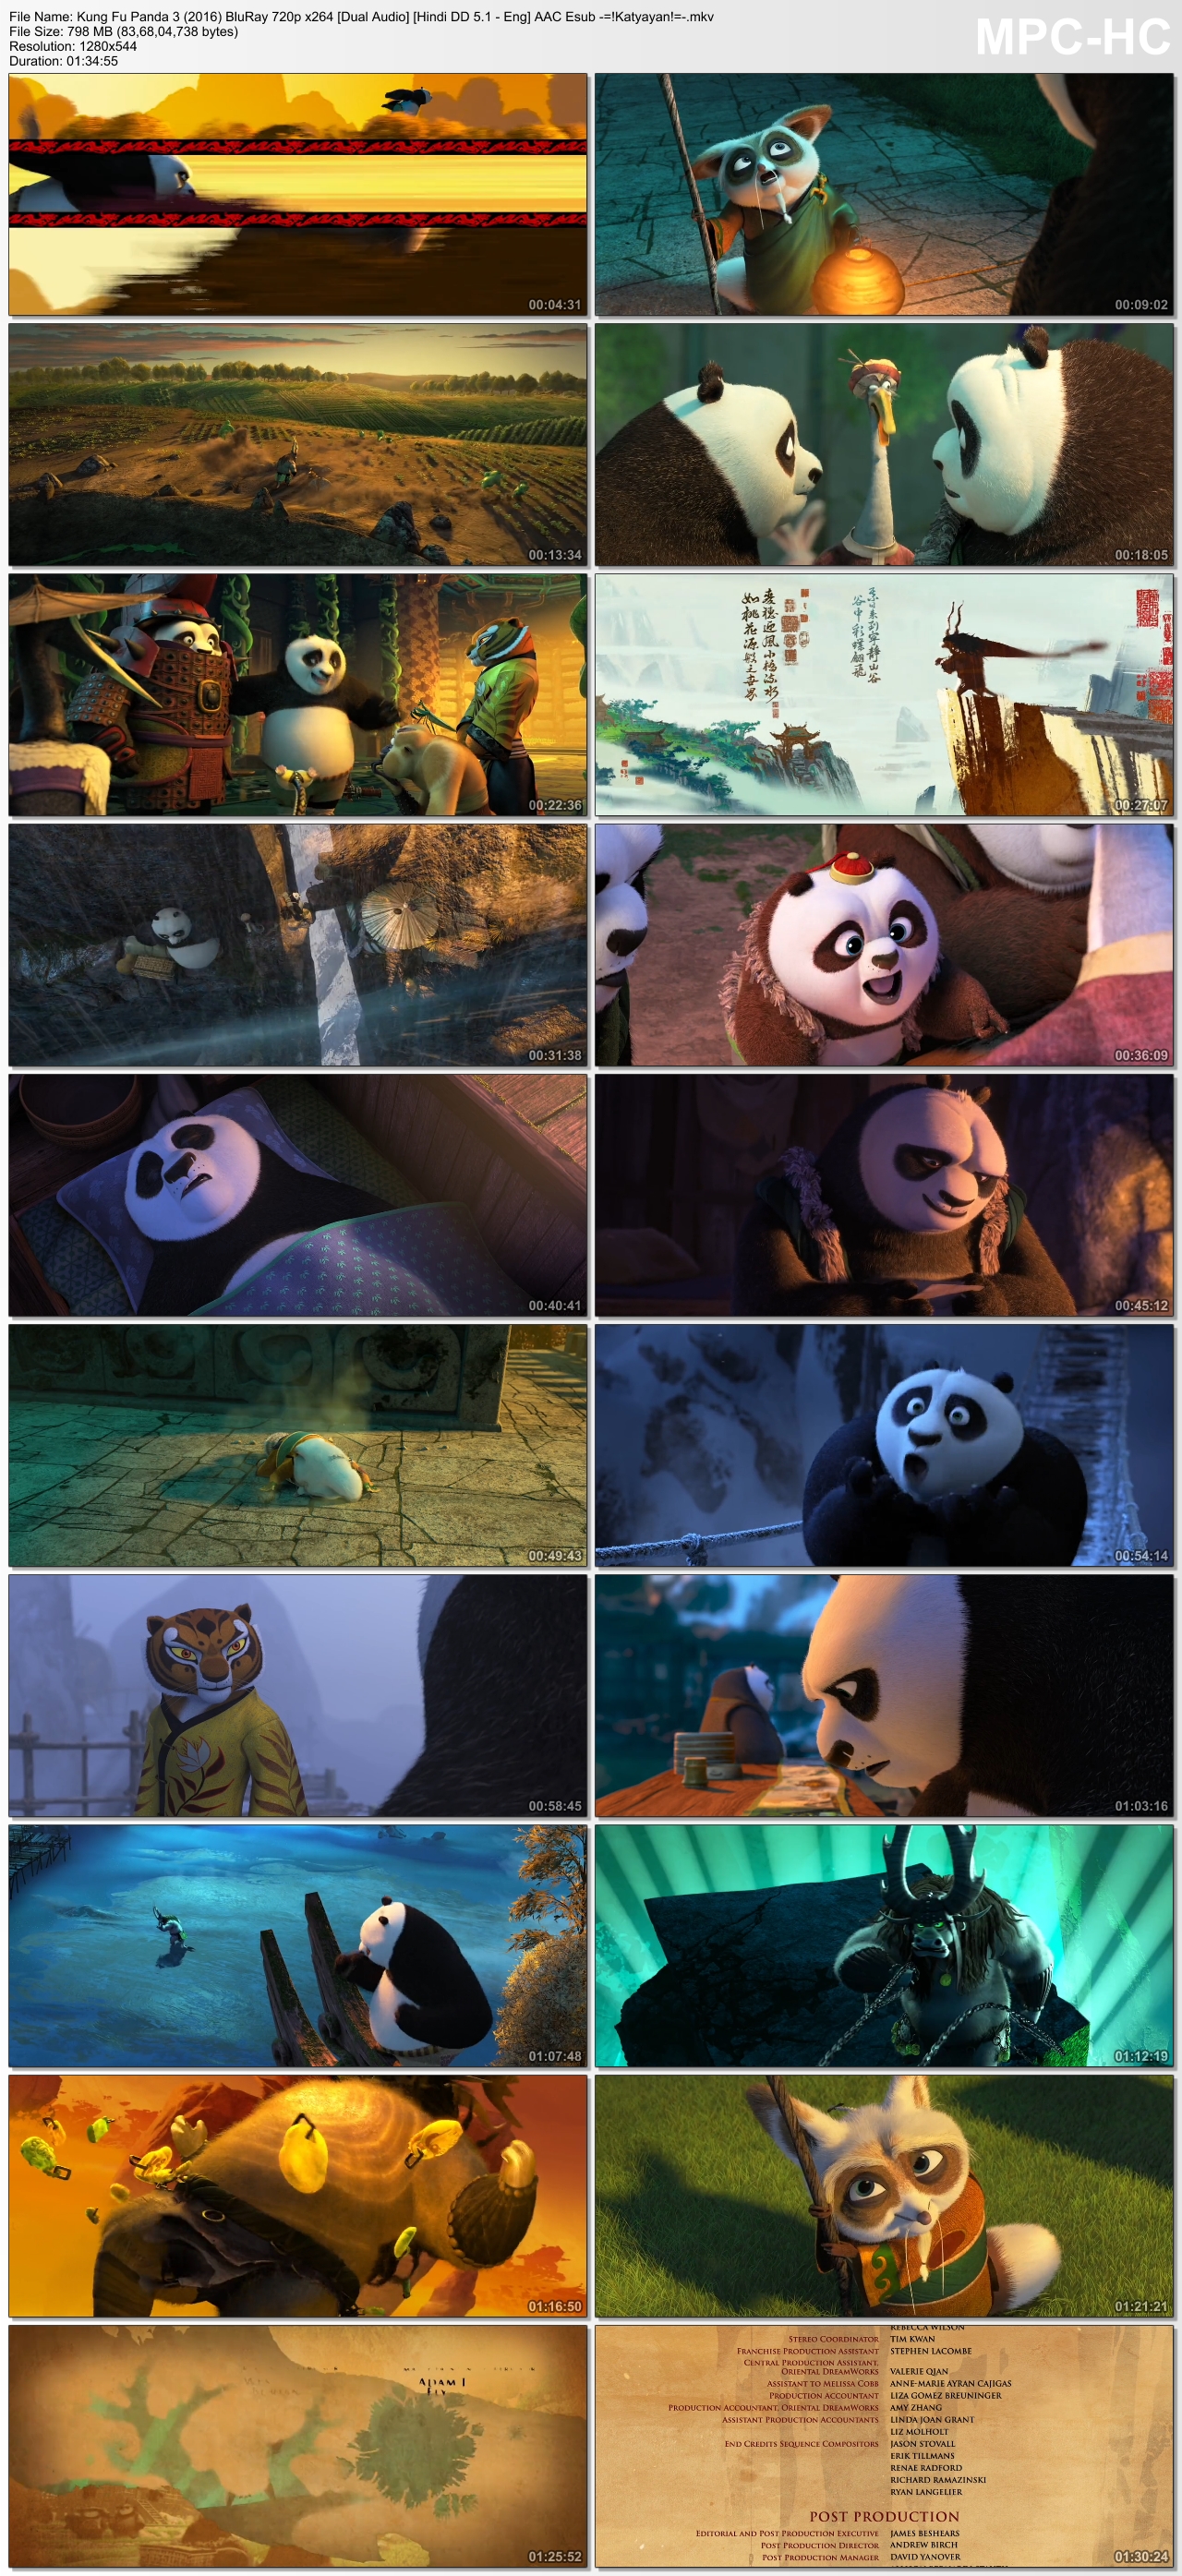 Kung Fu Panda 3 2016 BluRay 720p x264 Dual Audio Hindi DD 5 1 Eng AAC Esub Katyayan